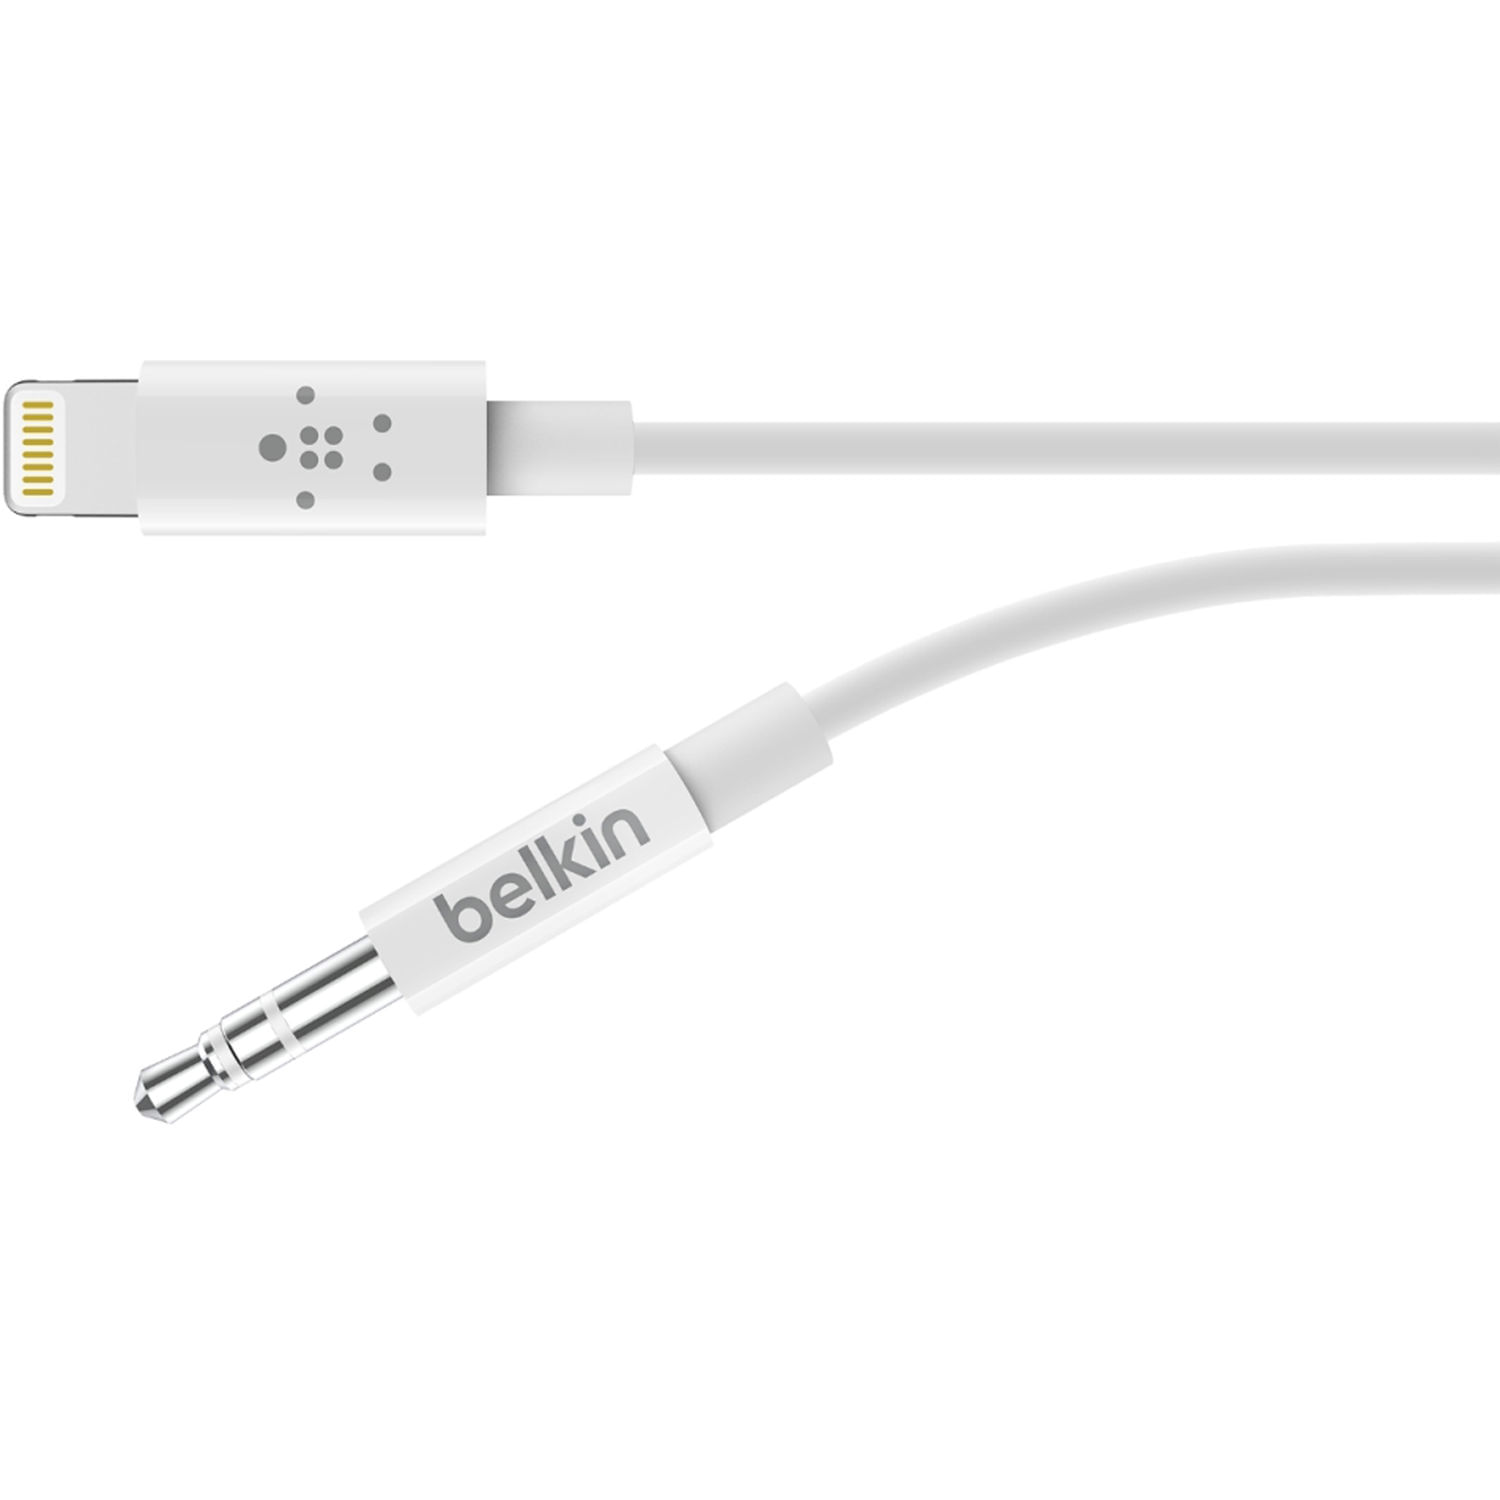 Cable Belkin 90cm Audio 35mm to Lightning MFi - AV10172BT03